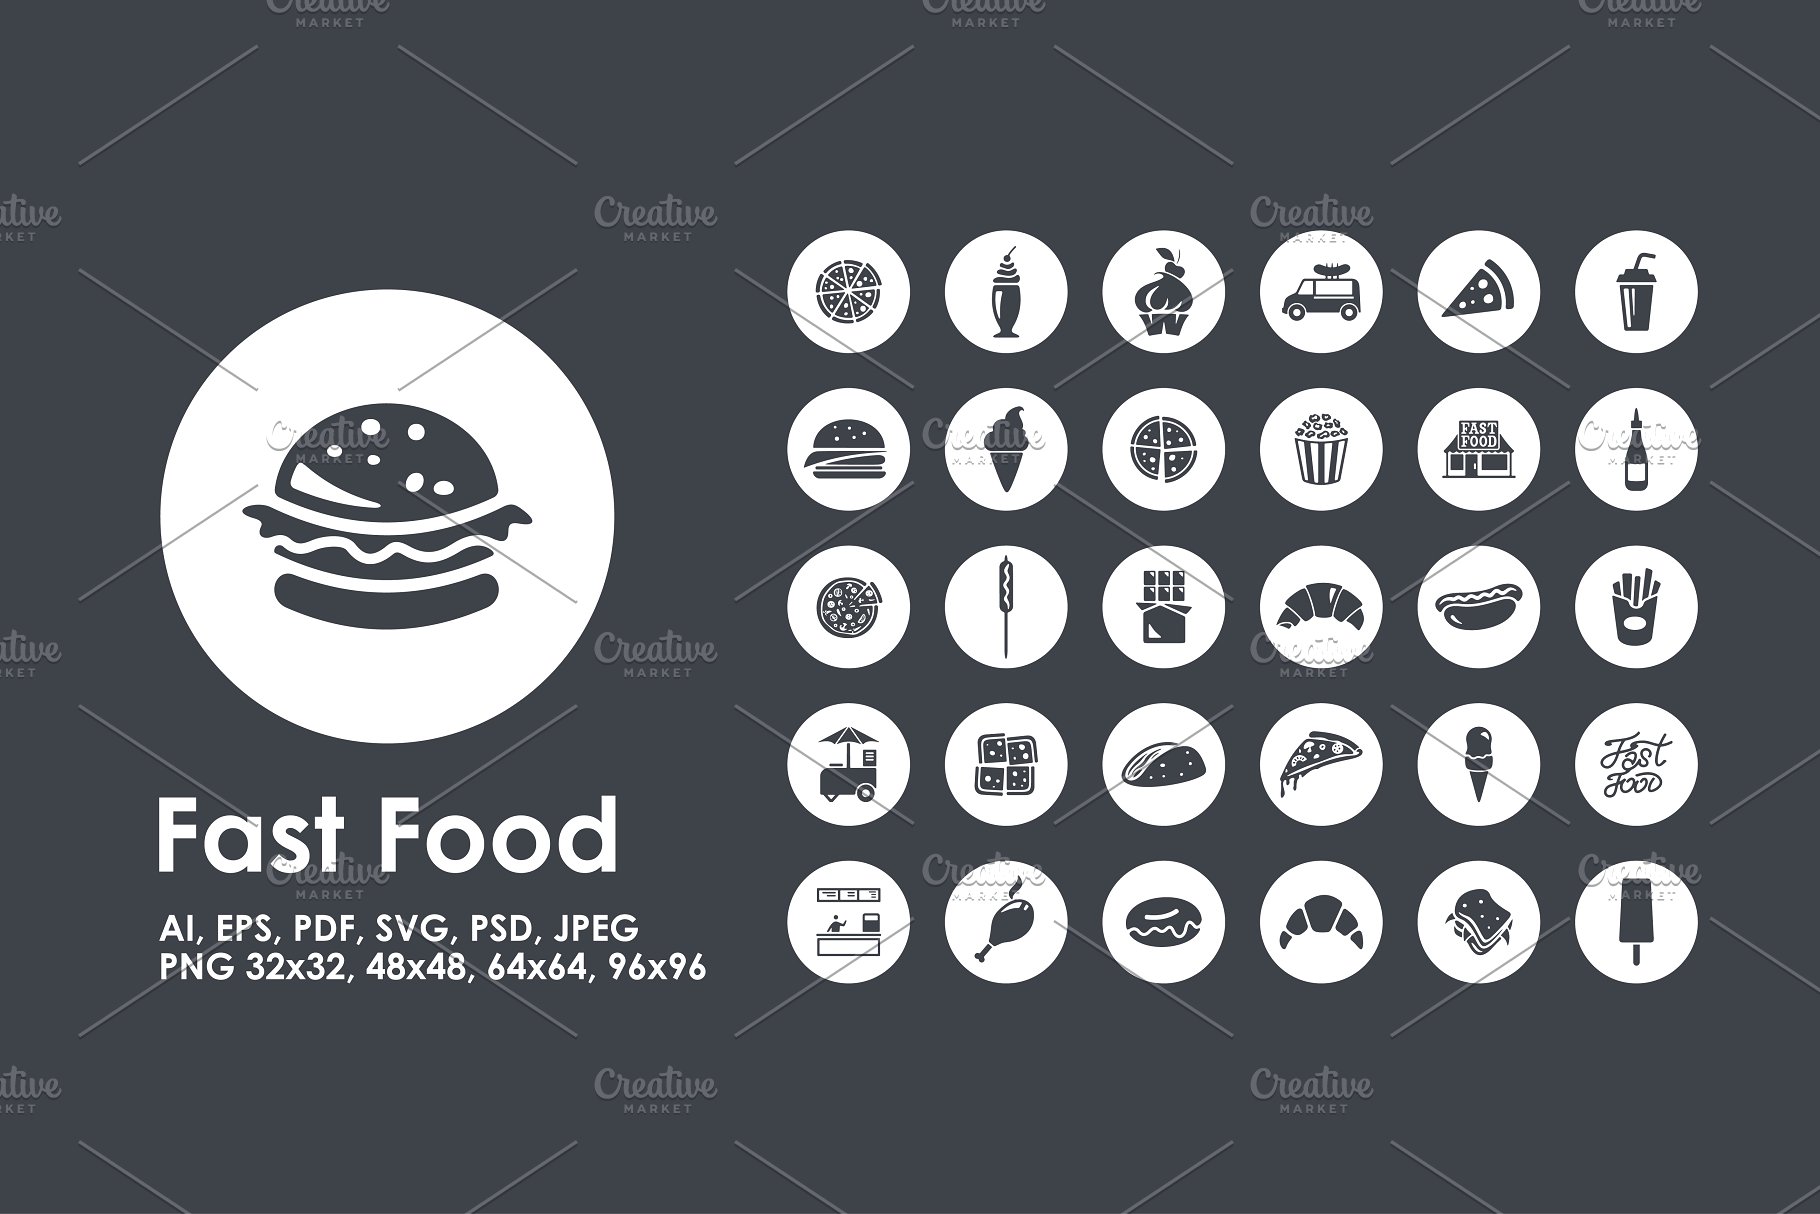 快餐食品图标 Fast Food icons #91241